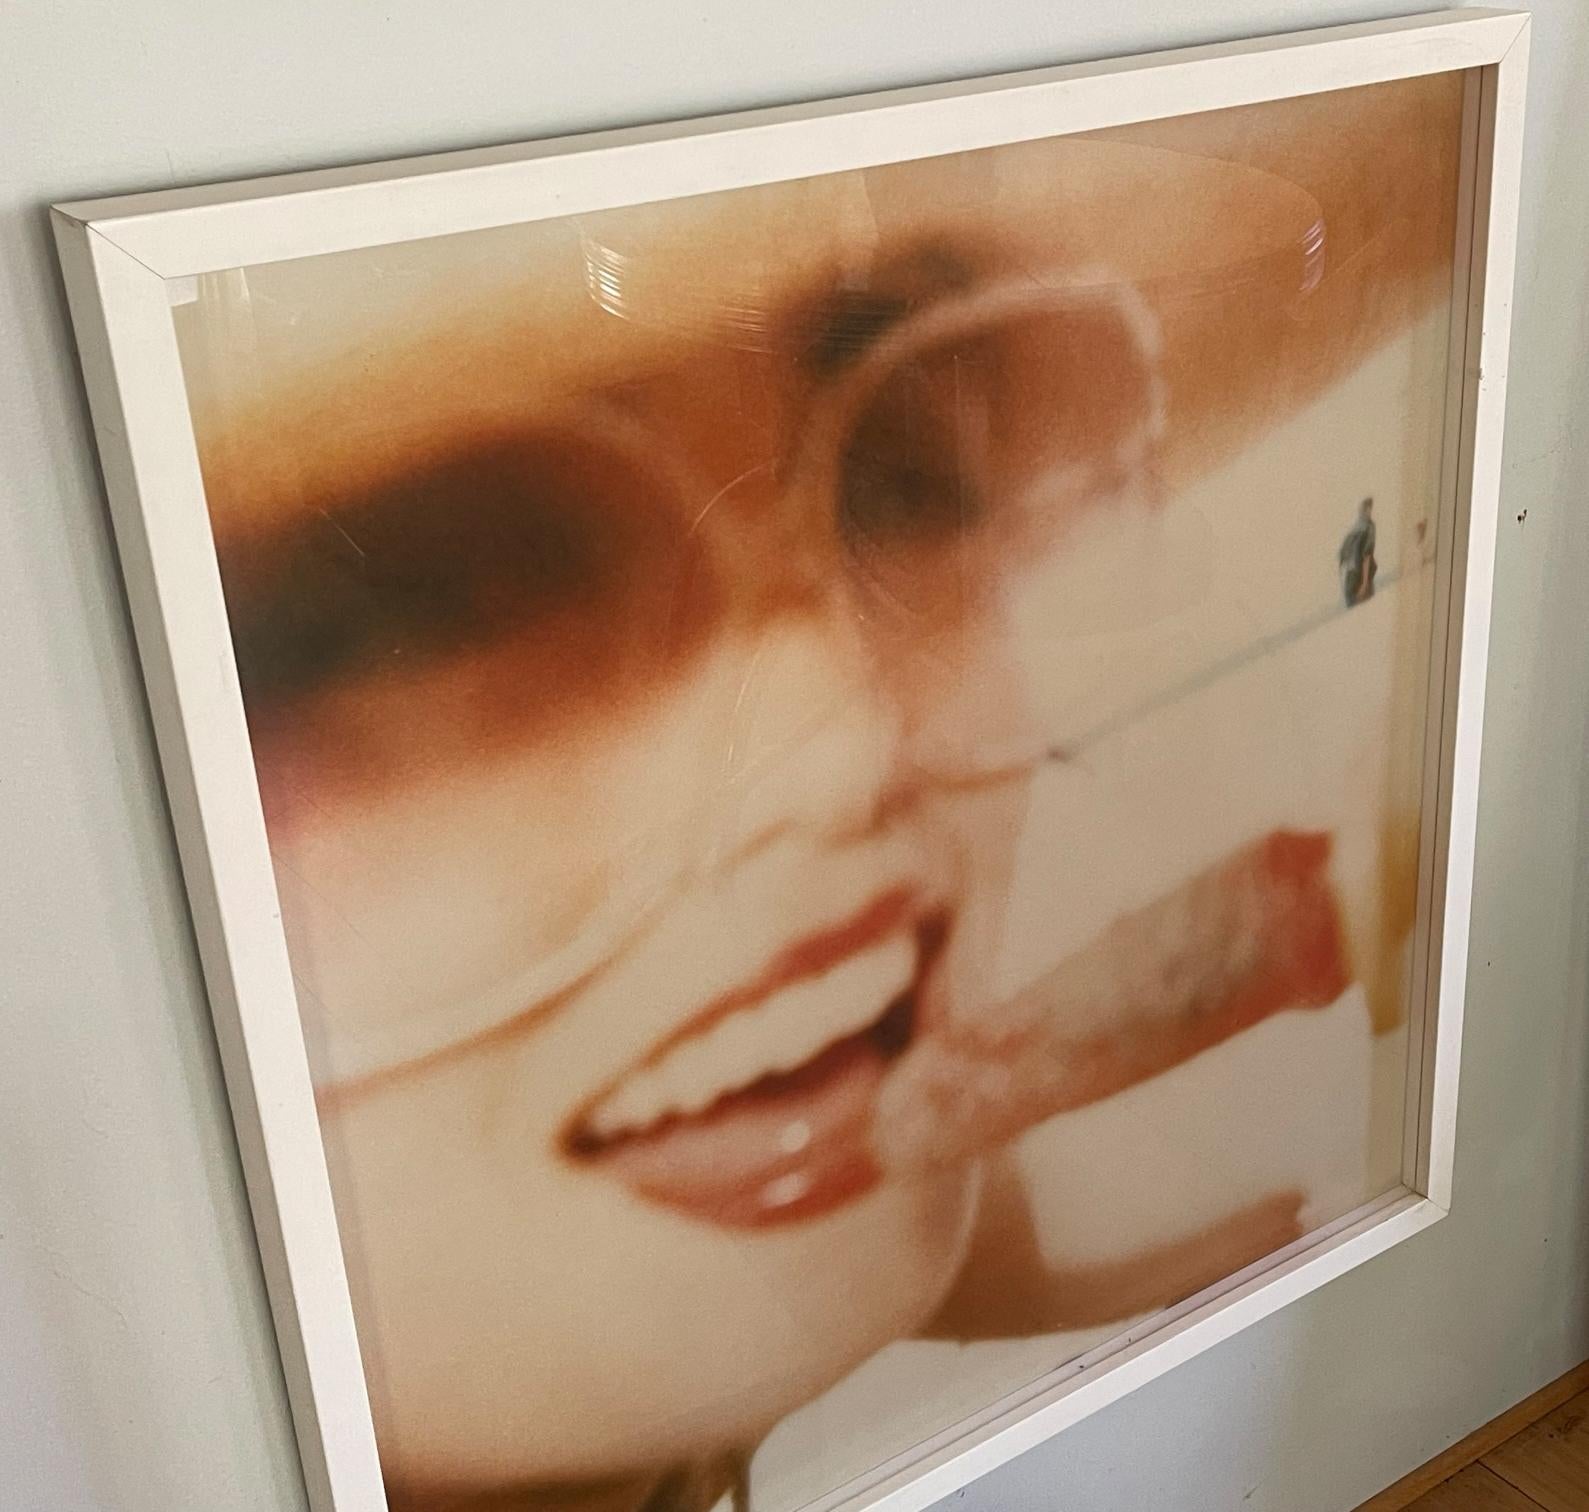 Lollipop (Beachshoot) - 2005

80x80cm, Auflage 1/5. 
Analoger C-Print, von der Künstlerin handgedruckt auf Fuji Crystal Archive Papier, basierend auf dem Polaroid. 
Unter Glas mit weißem Holzrahmen. 
Unterzeichnet mit Zertifikat.  